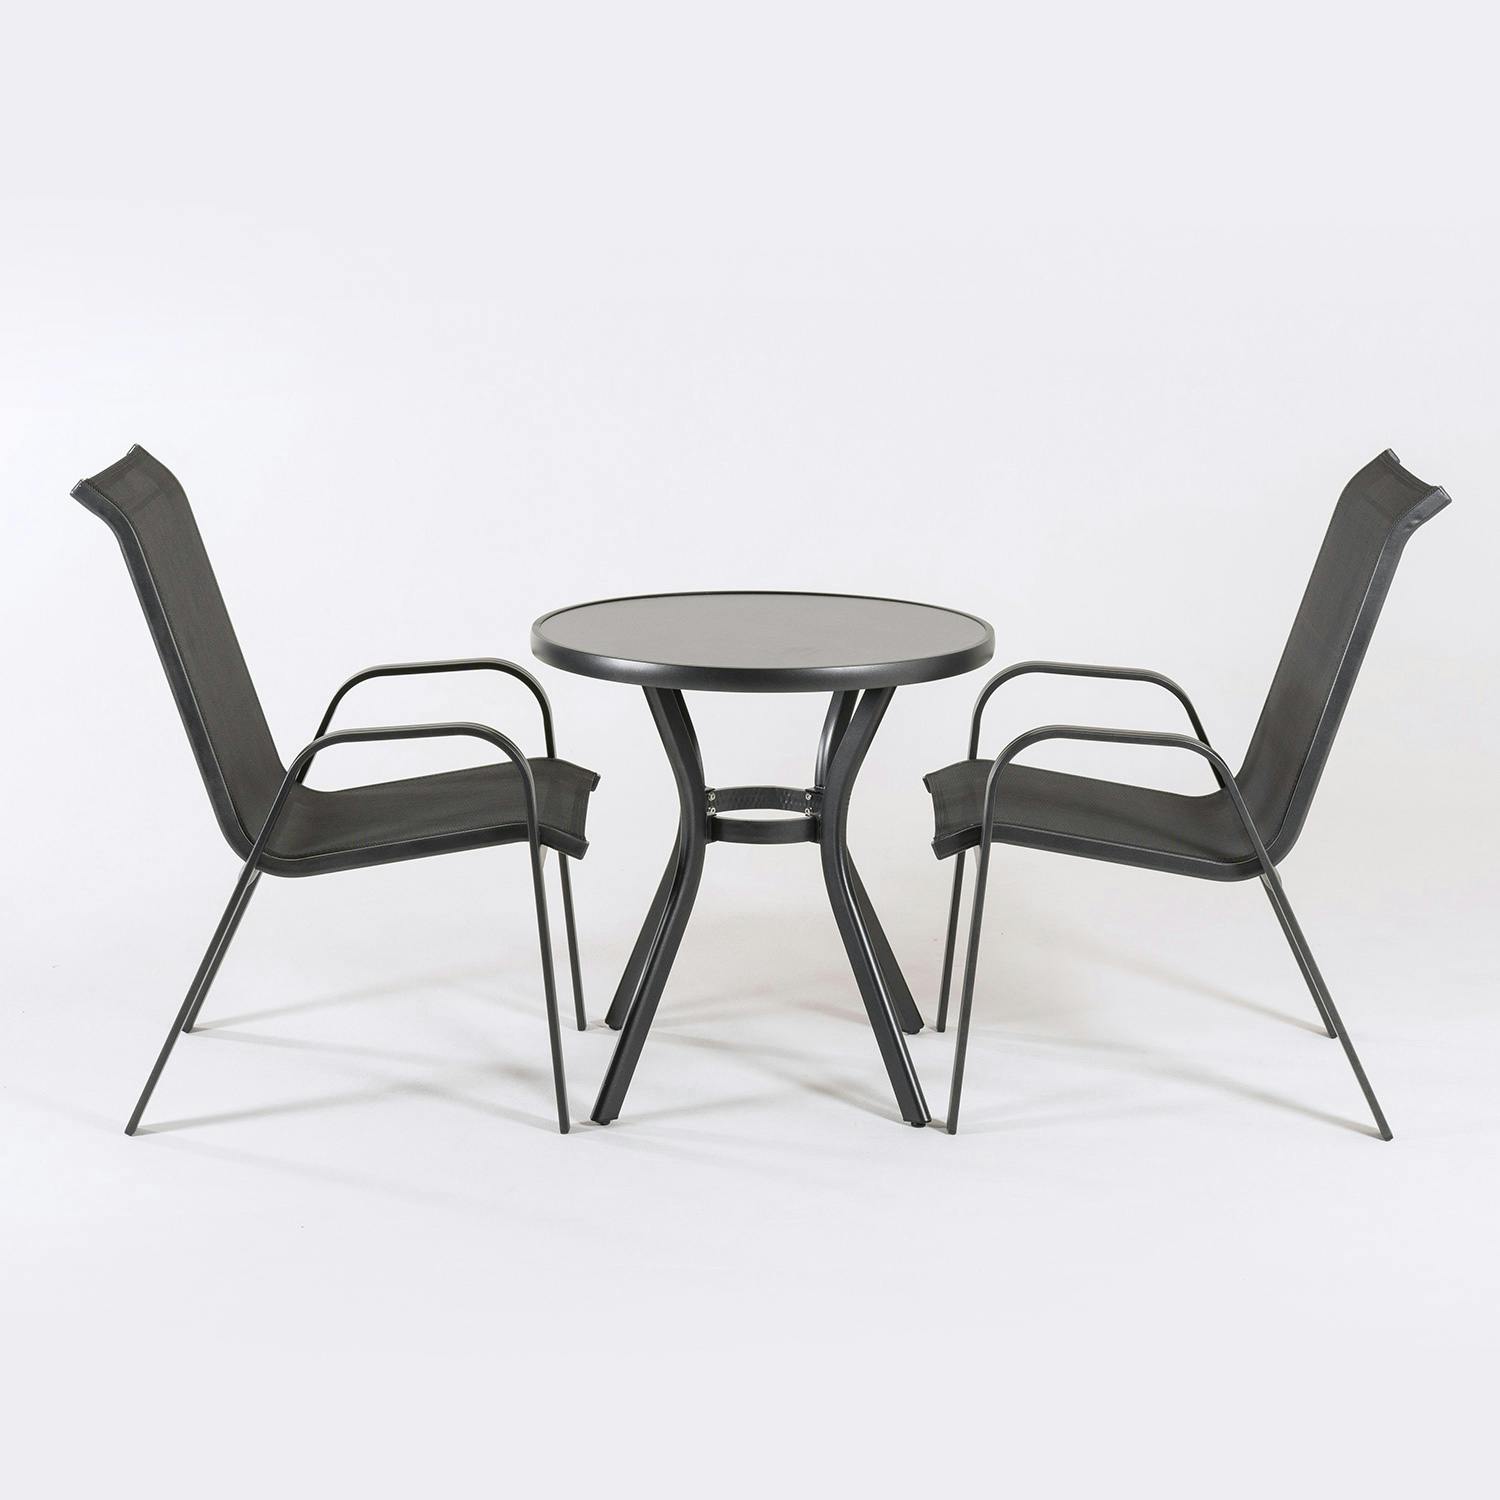 Personificación enlazar Respectivamente Conjunto de terraza, Mesa redonda de 72 cm de diámetro y 2 sillones de  aluminio color antracita. | MAKRO Marketplace